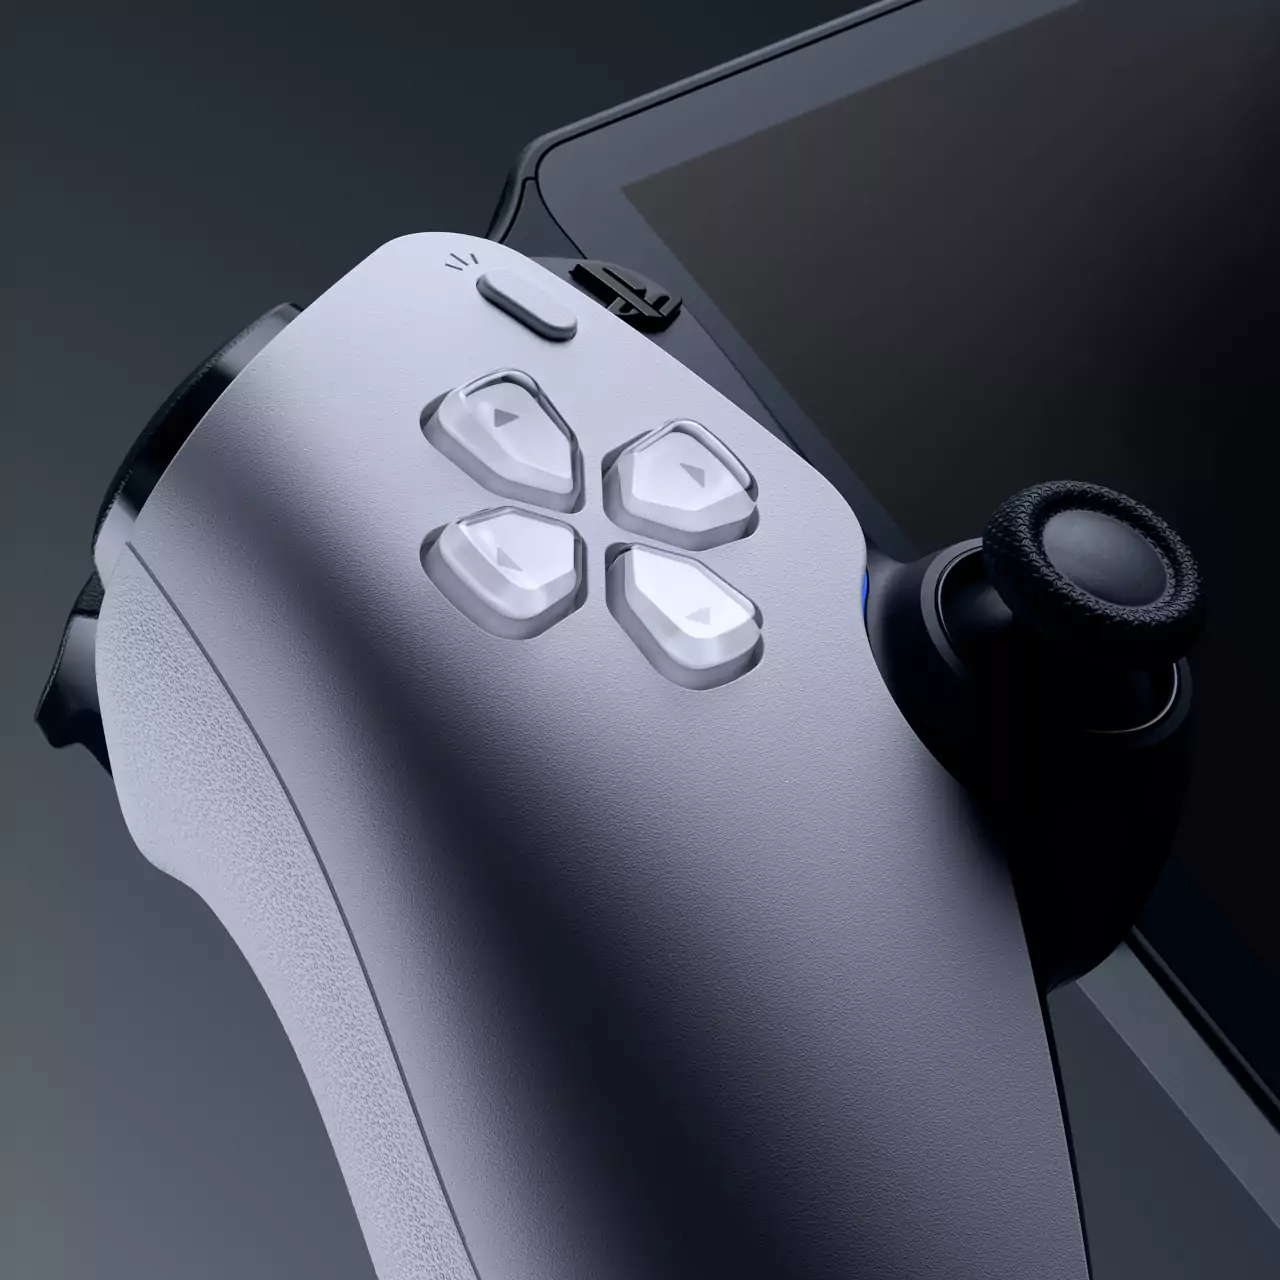 PlayStation Portal no es una consola, pero Sony ha pedido a los analistas  que contabilicen sus ventas como un nuevo hardware - Reflotes